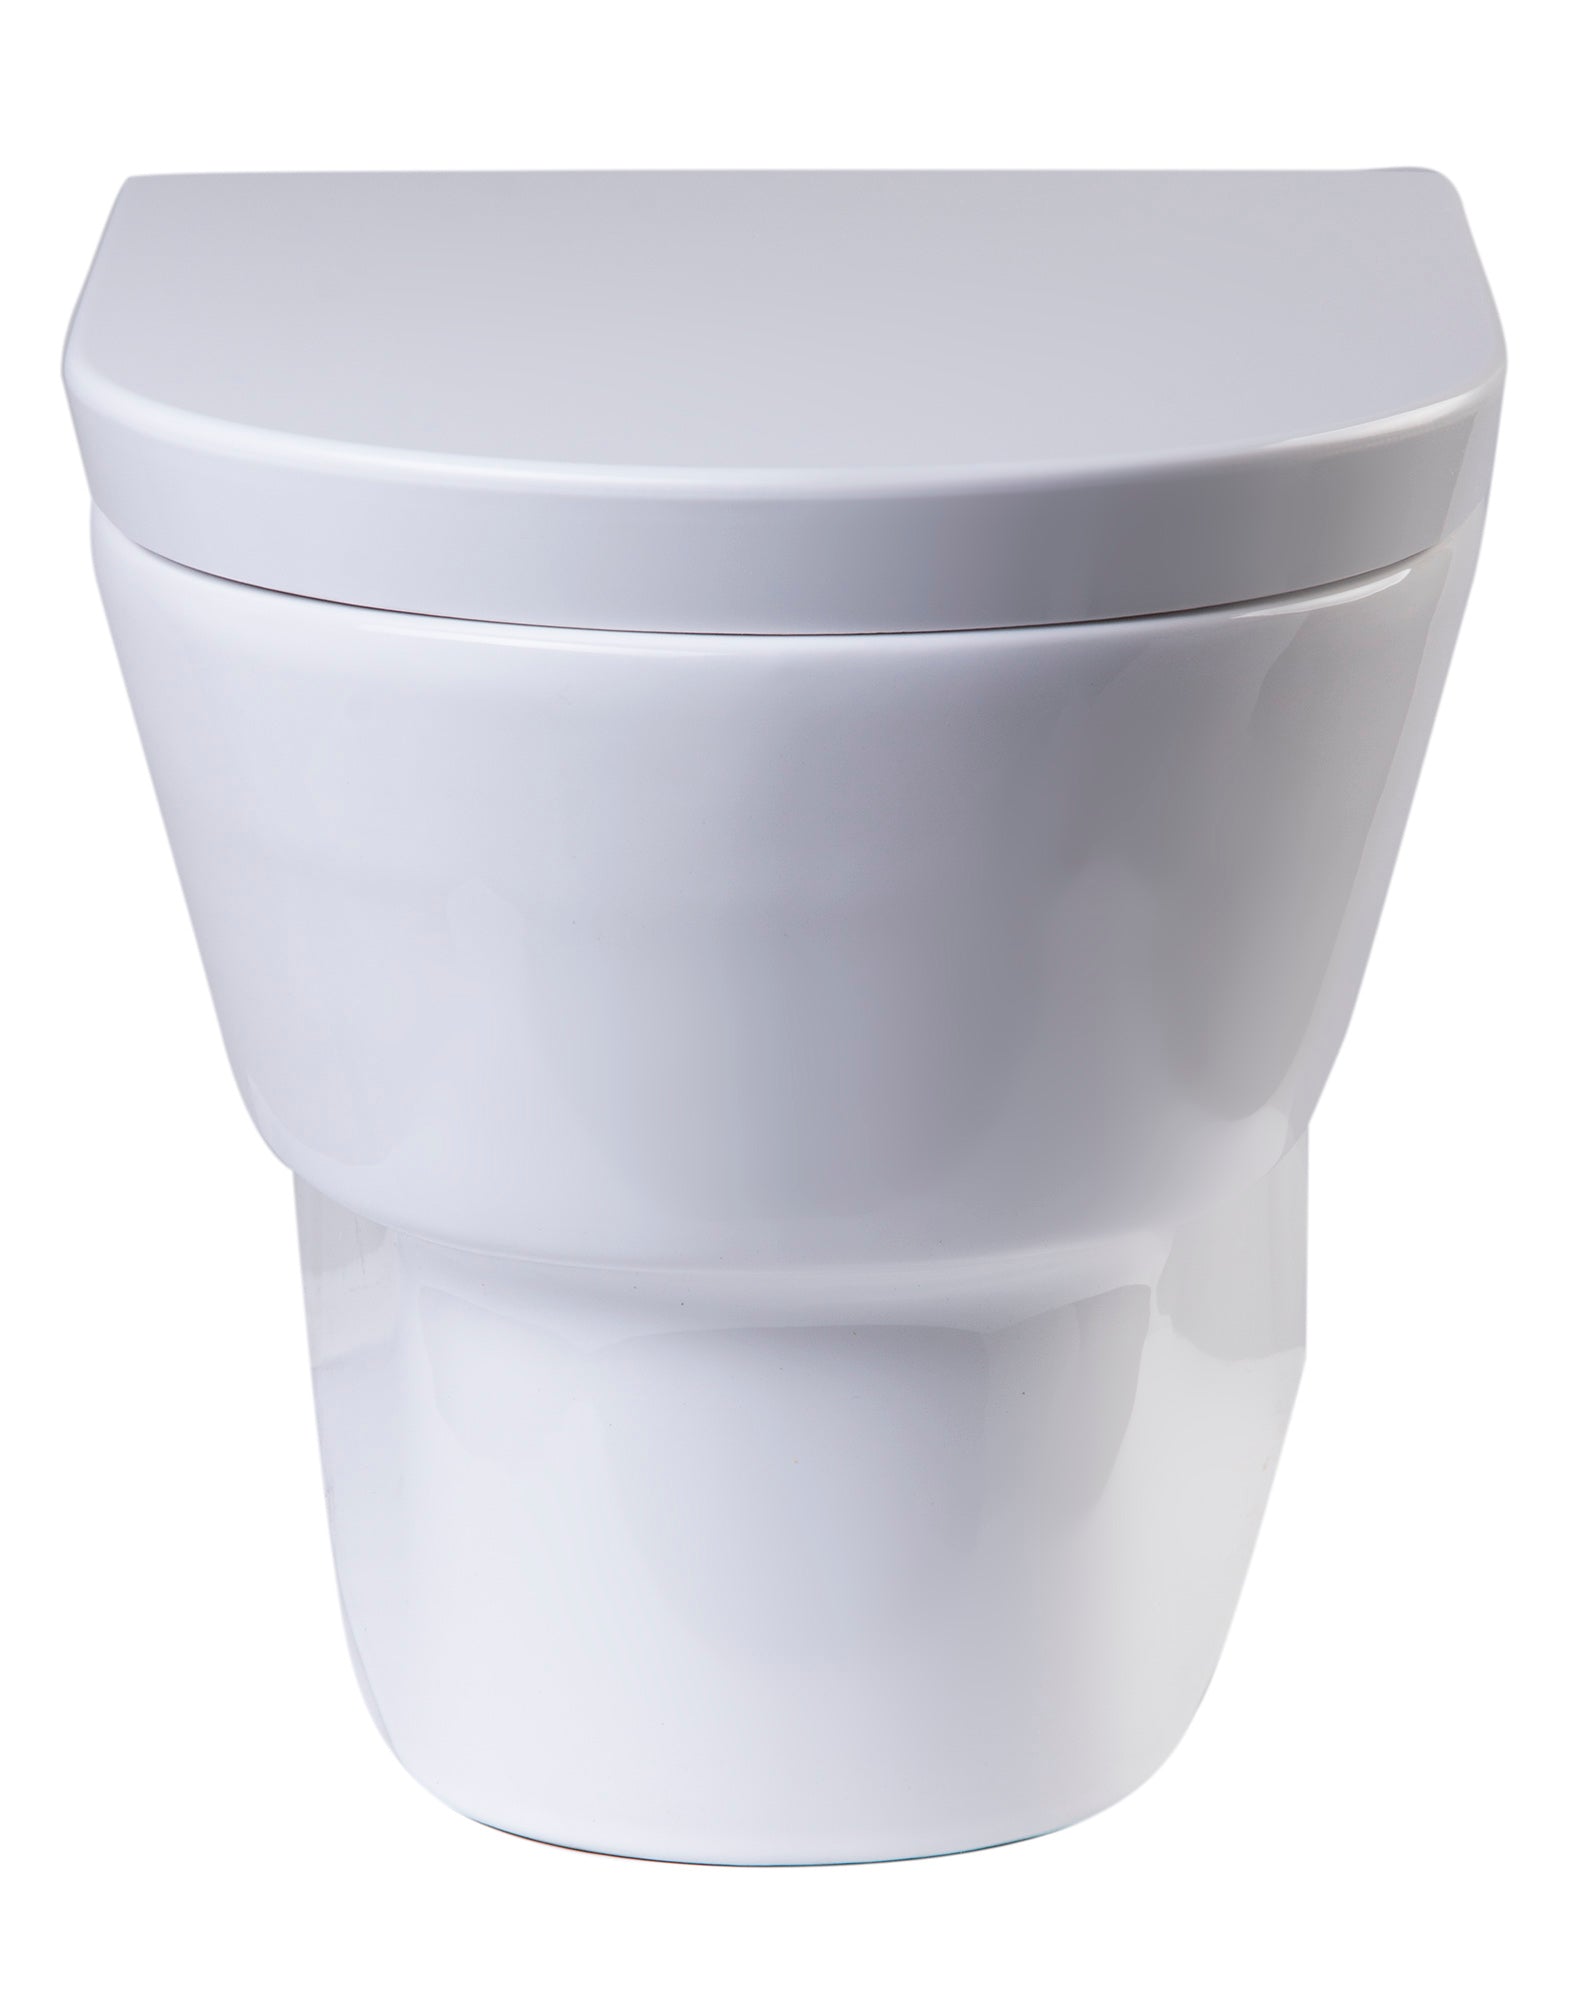 EAGO - Round Modern Wall Mount Dual Flush Toilet Bowl | WD332